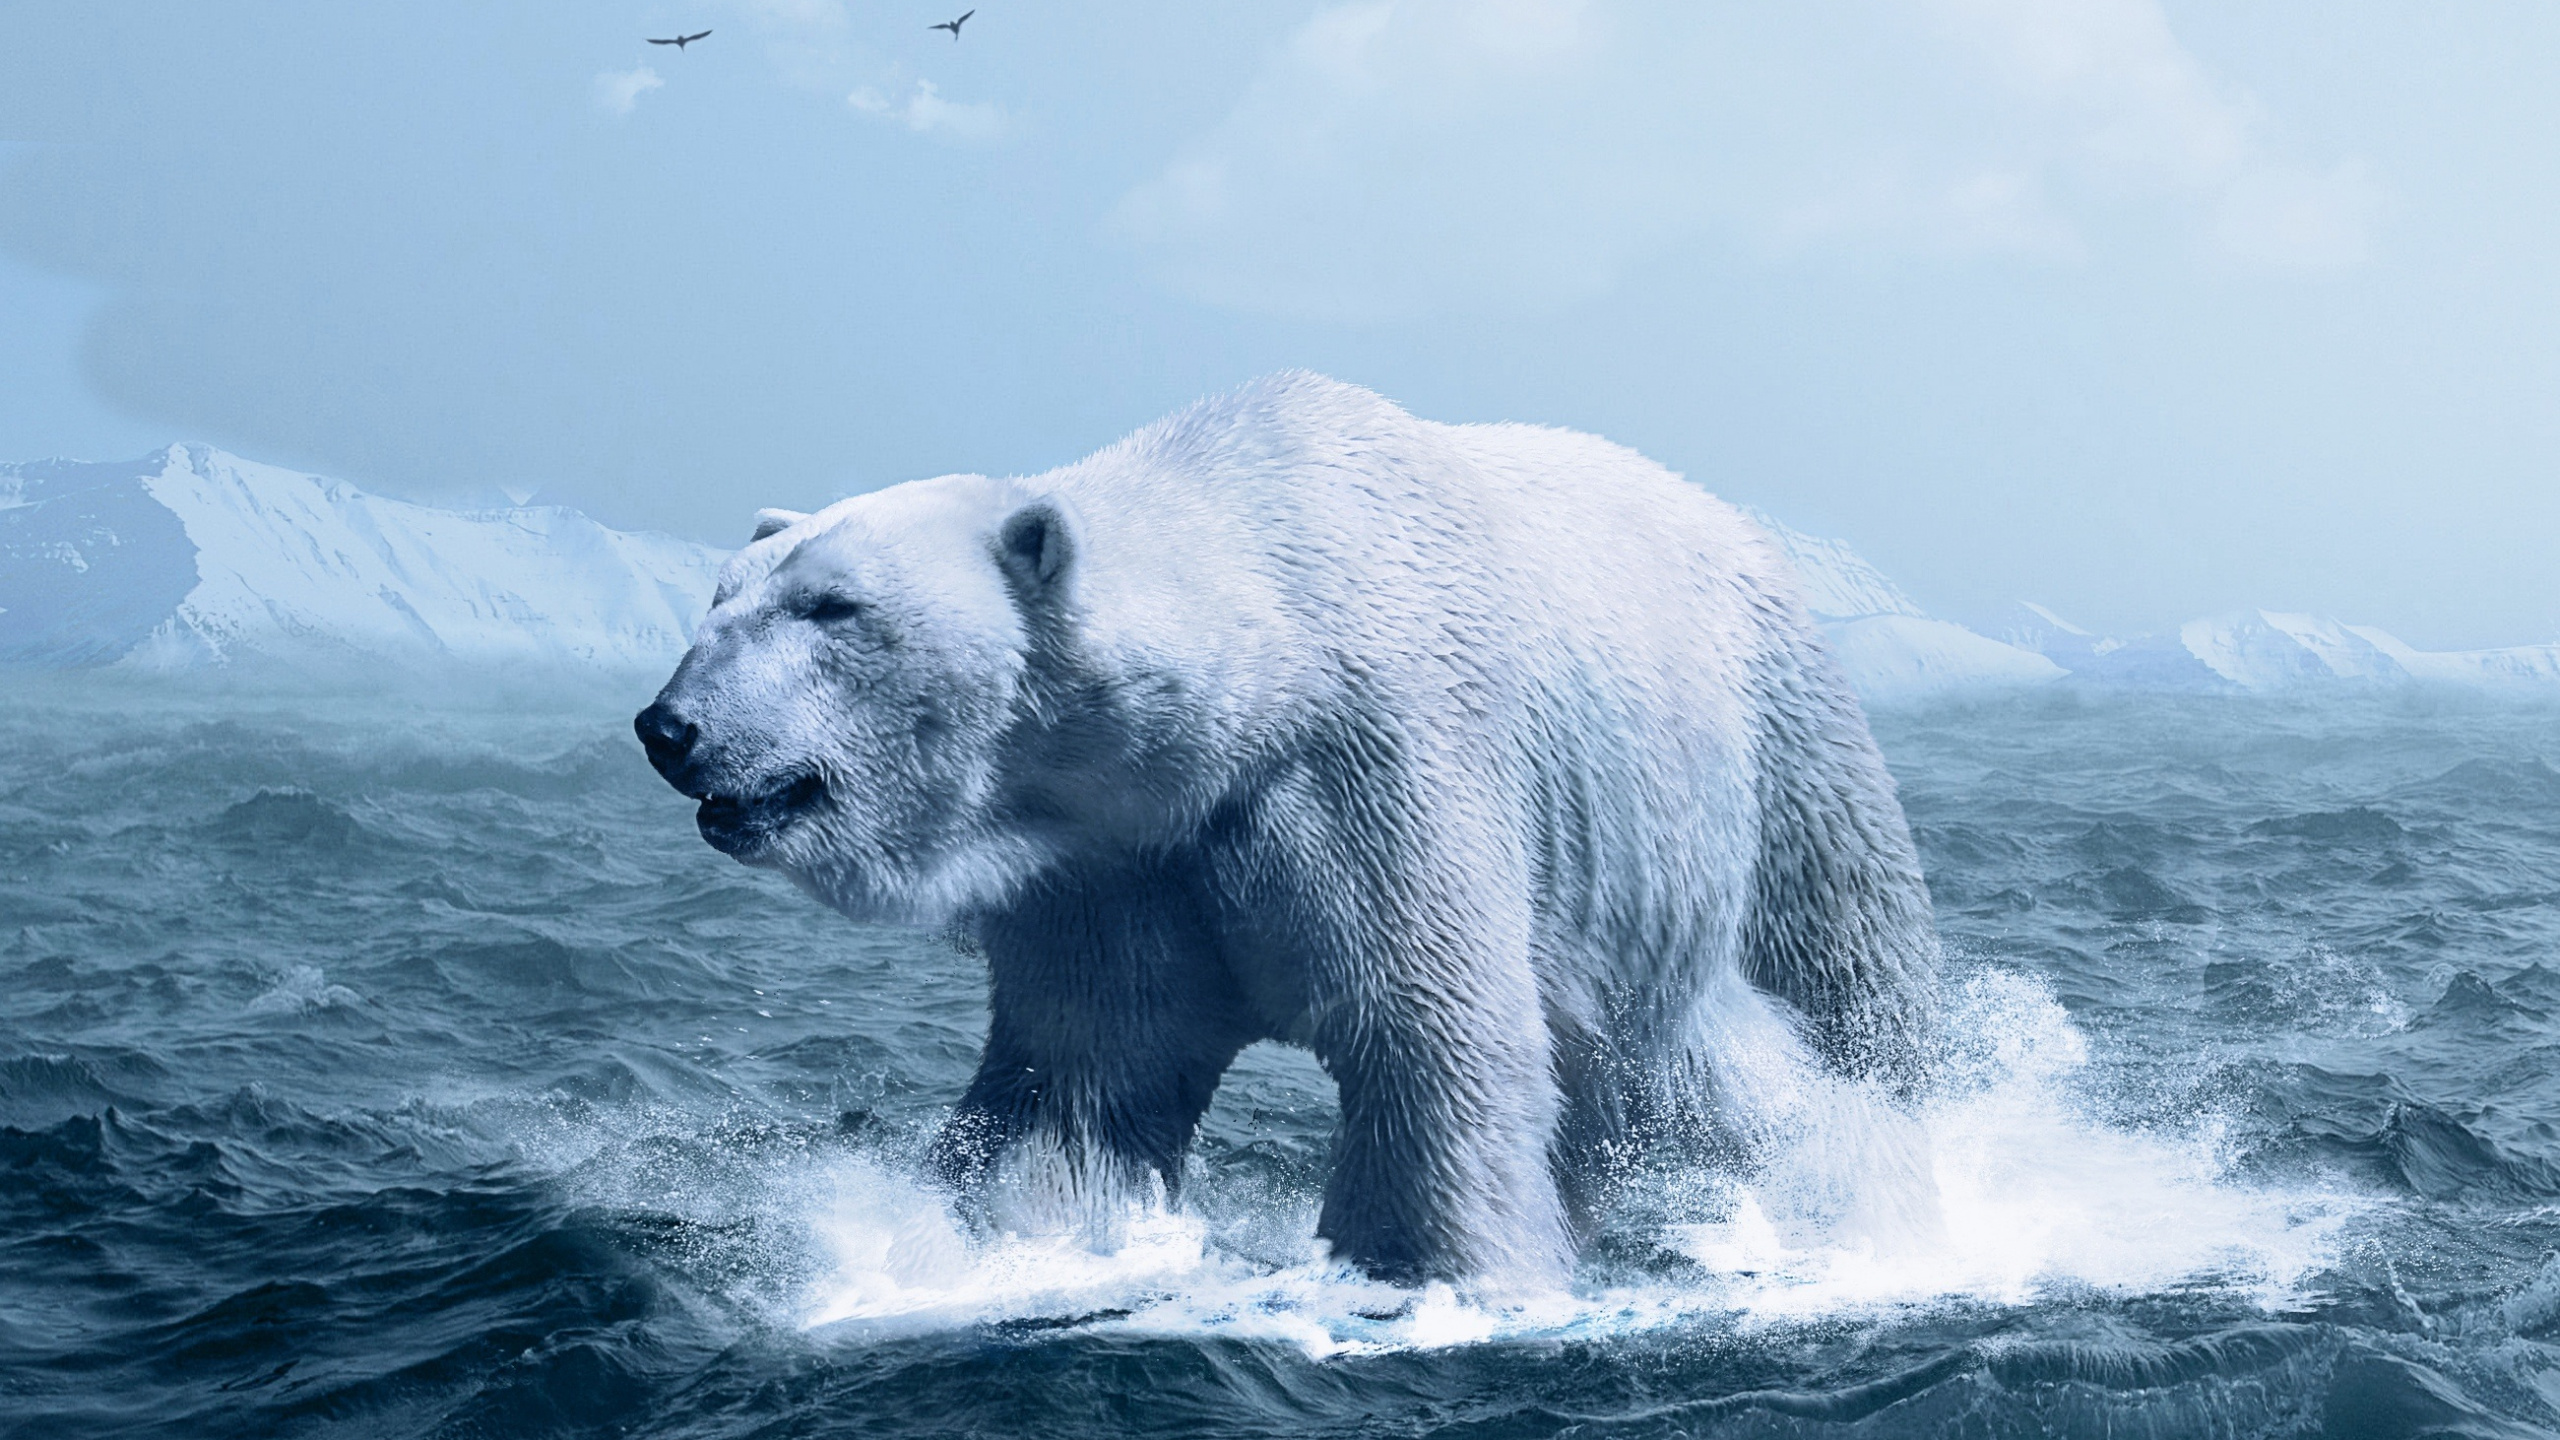 北极熊, 熊, 北极, 极地冰盖, 野生动物 壁纸 2560x1440 允许